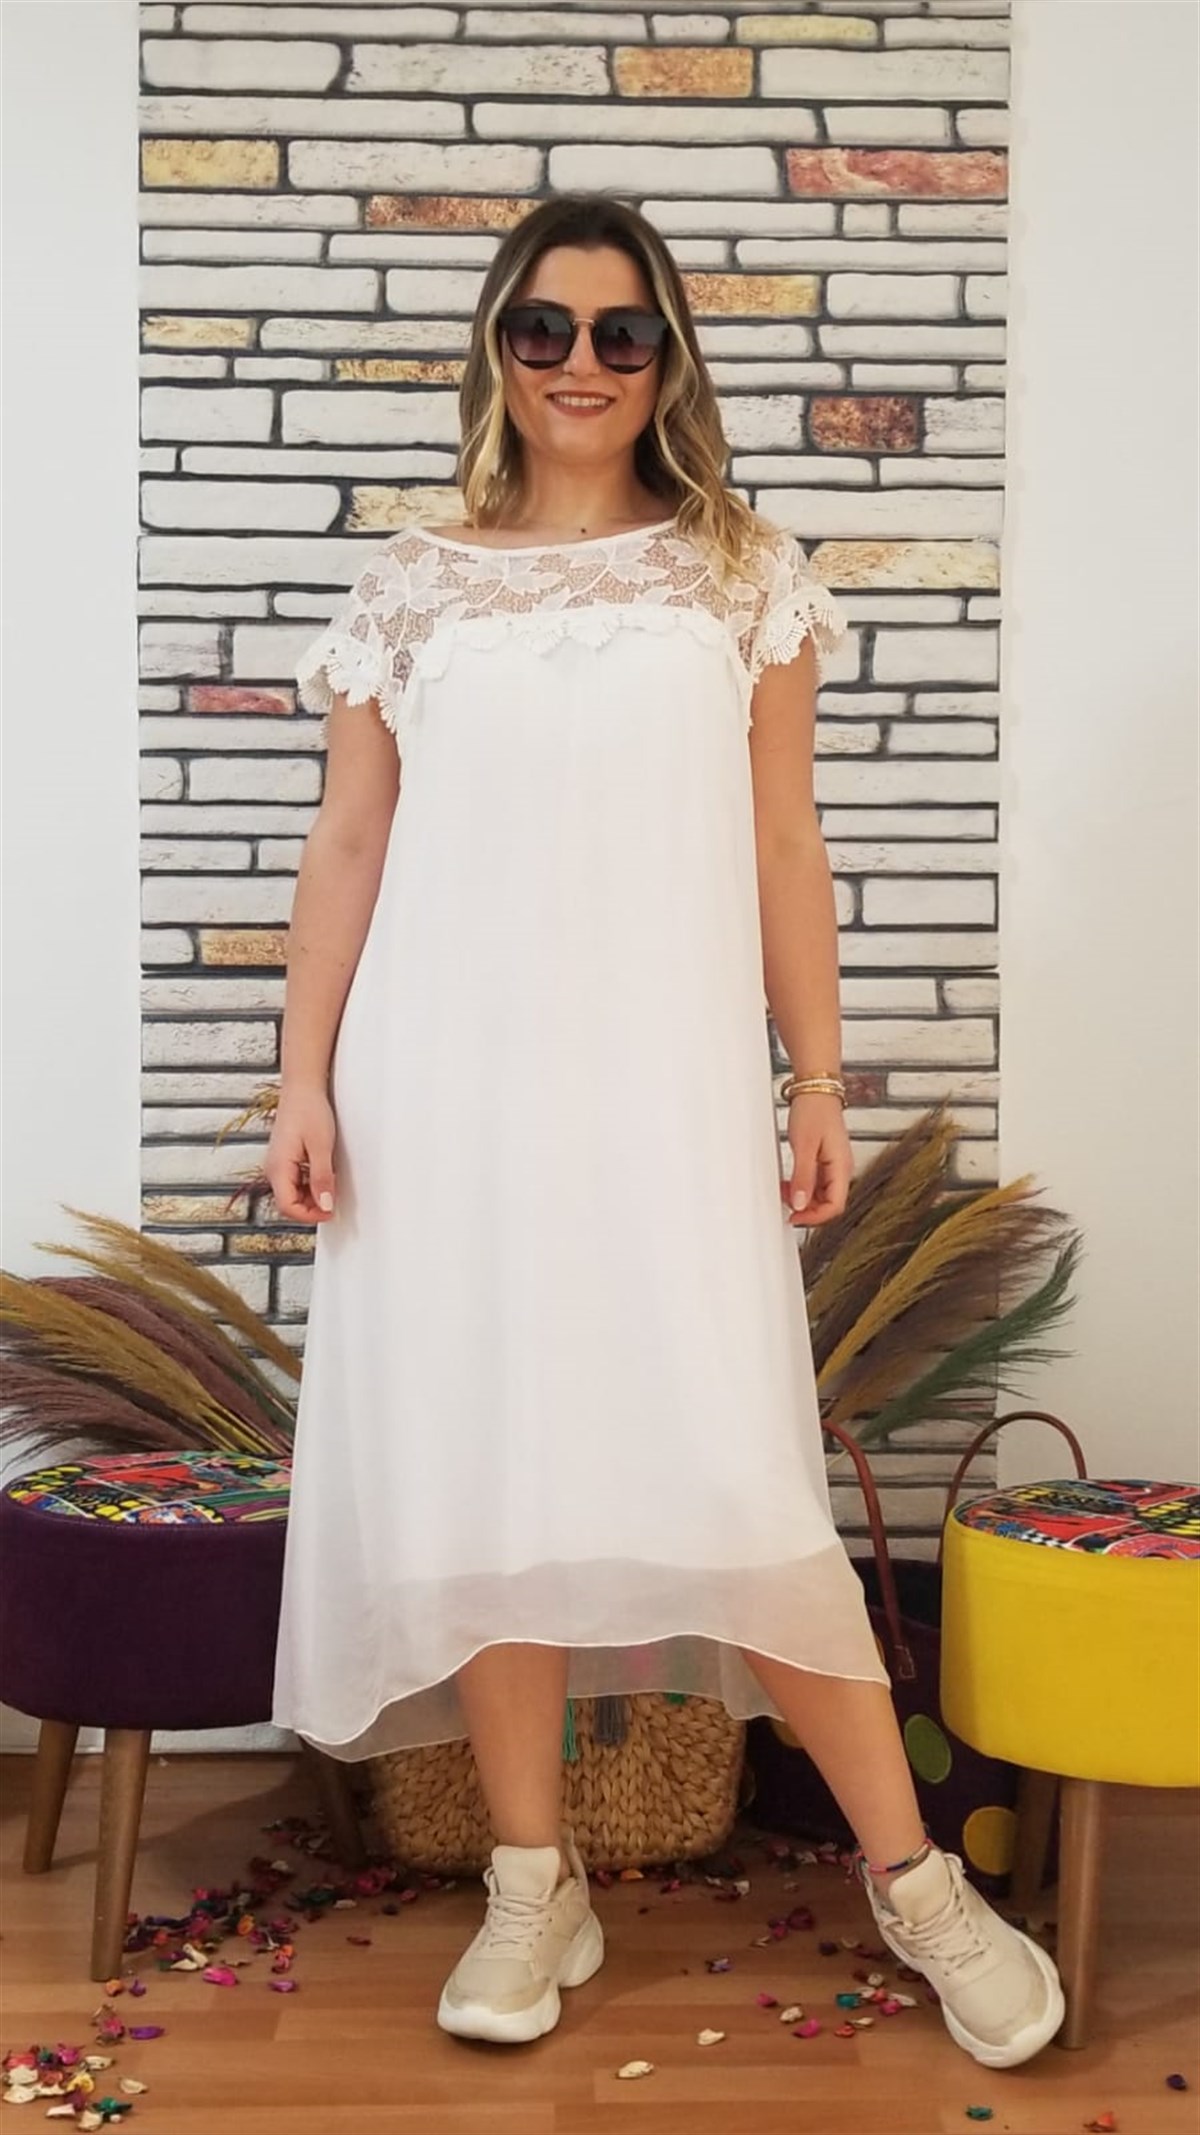 Beyaz İtalyan İpek Kumaş Küpür Detaylı İçi Astarlı Elbise